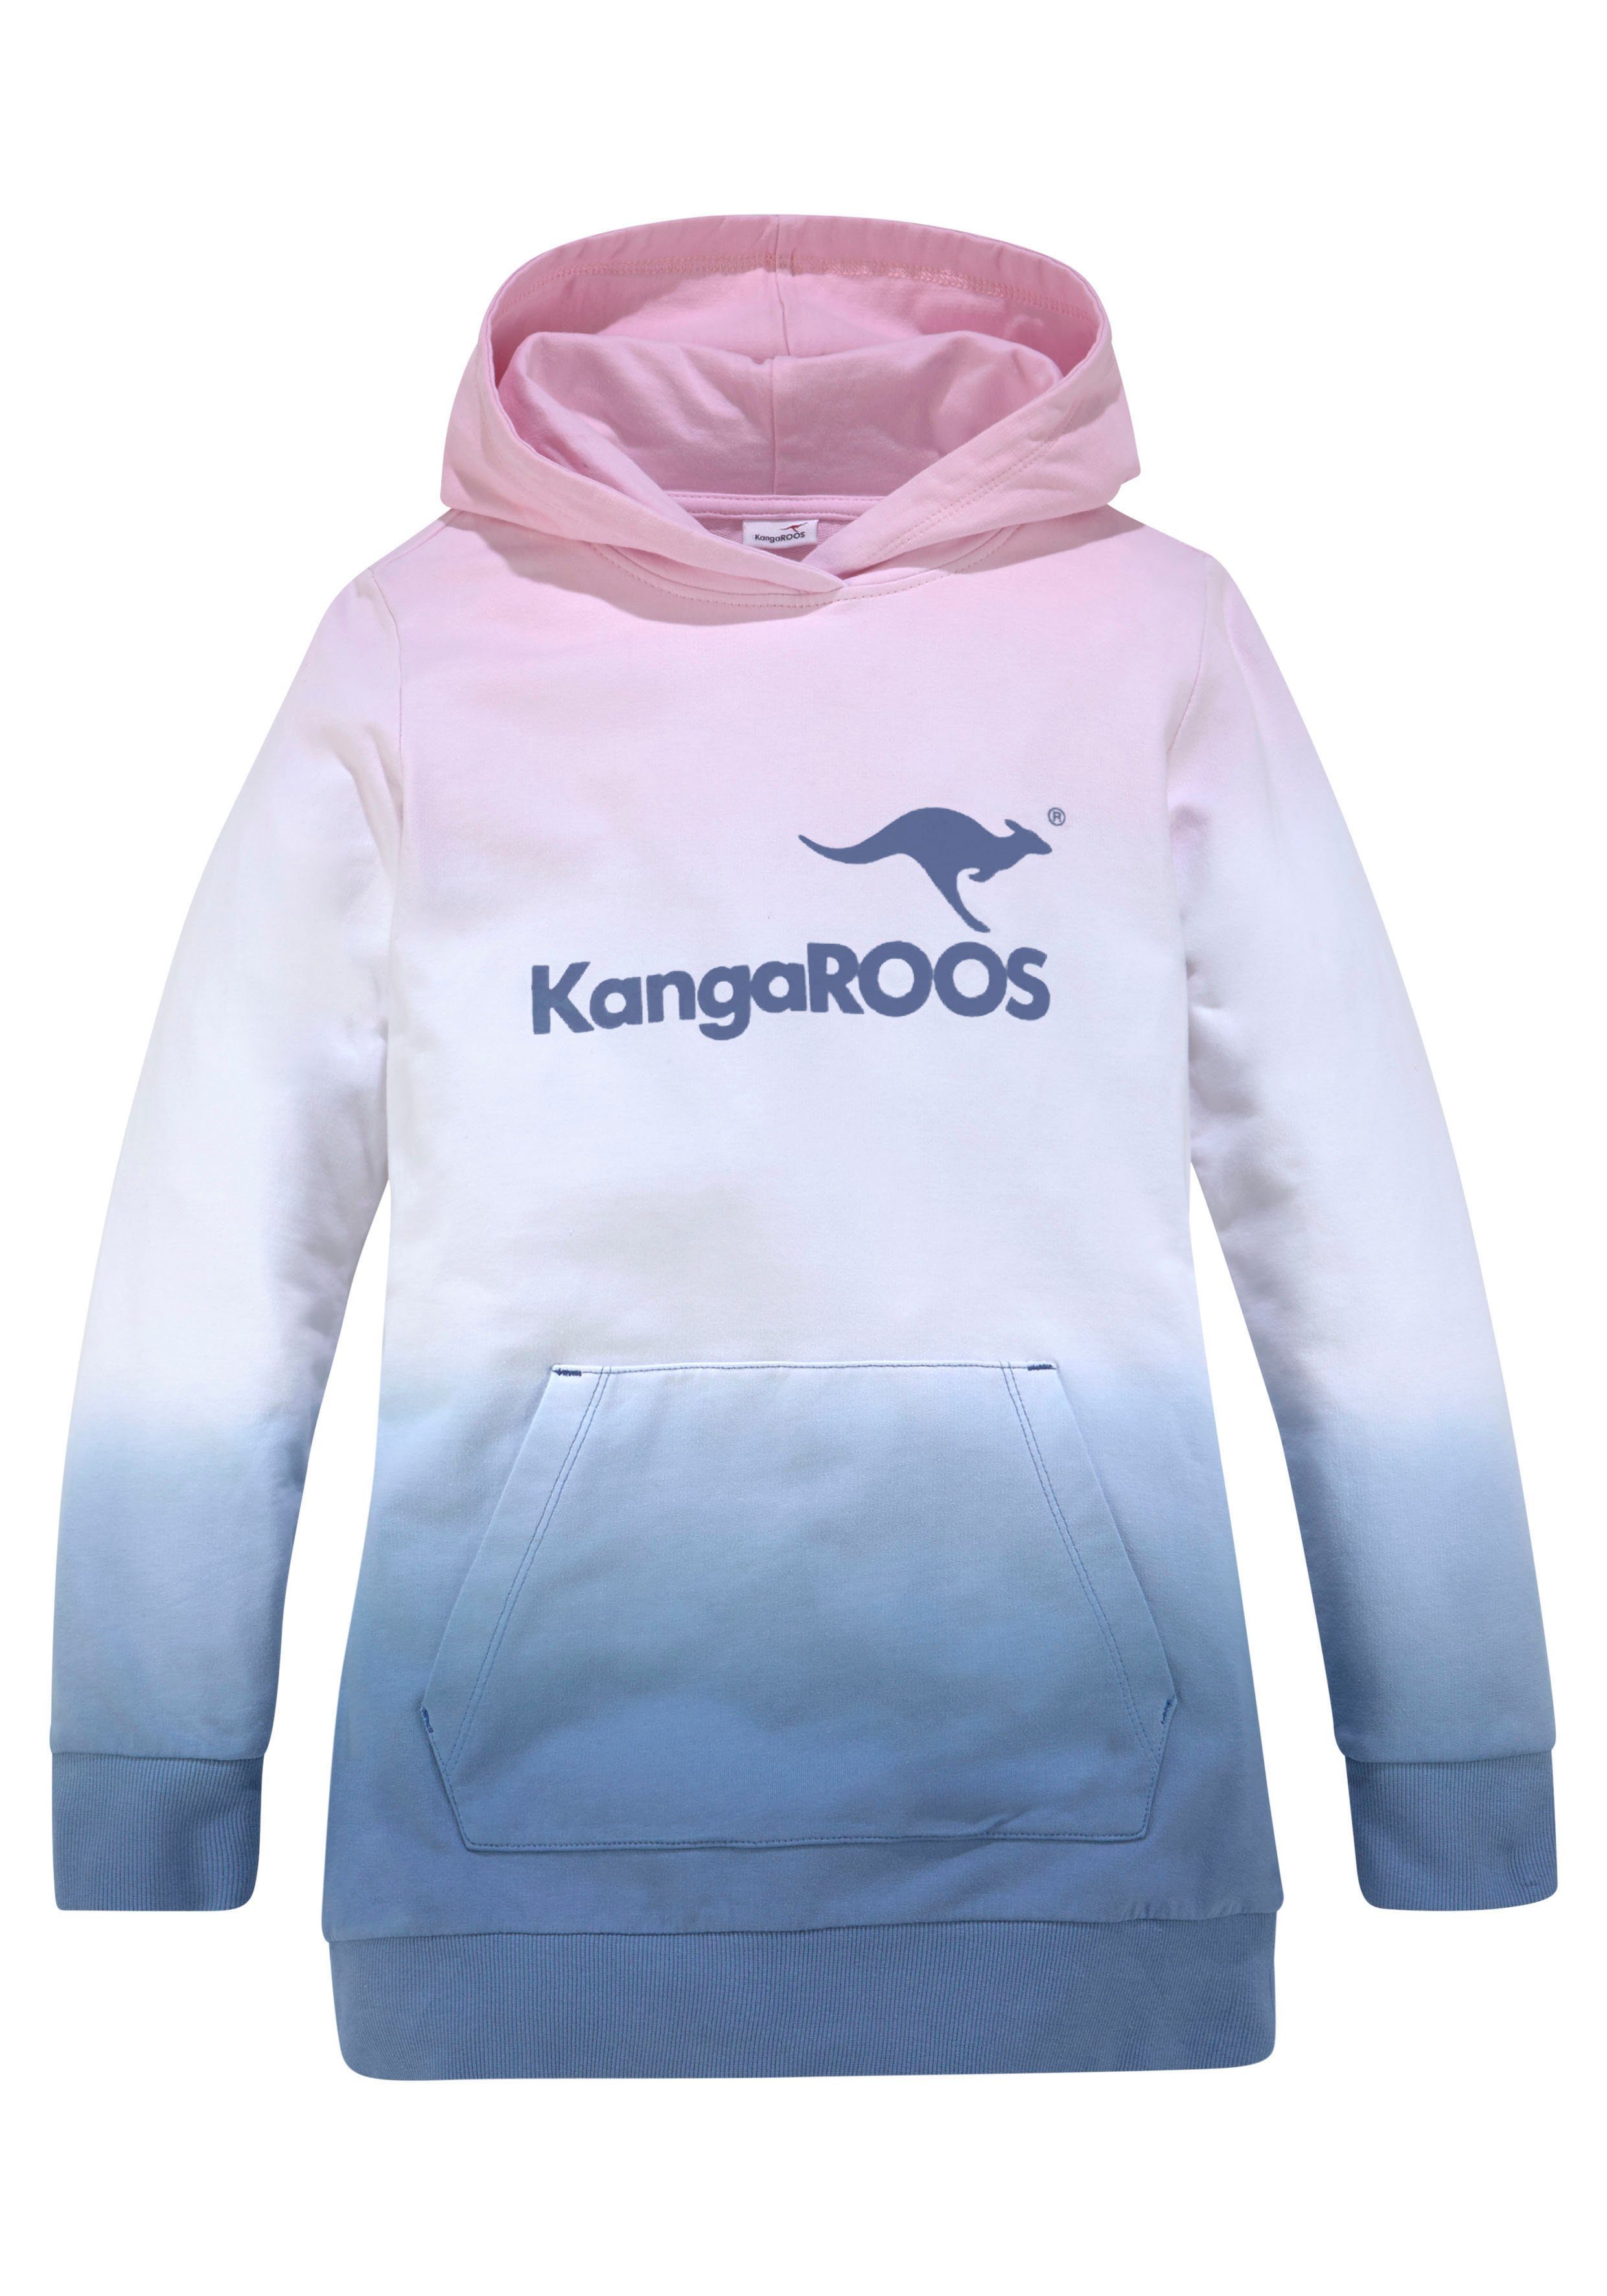 Kapuzensweatshirt im KangaROOS modischen Farbverlauf